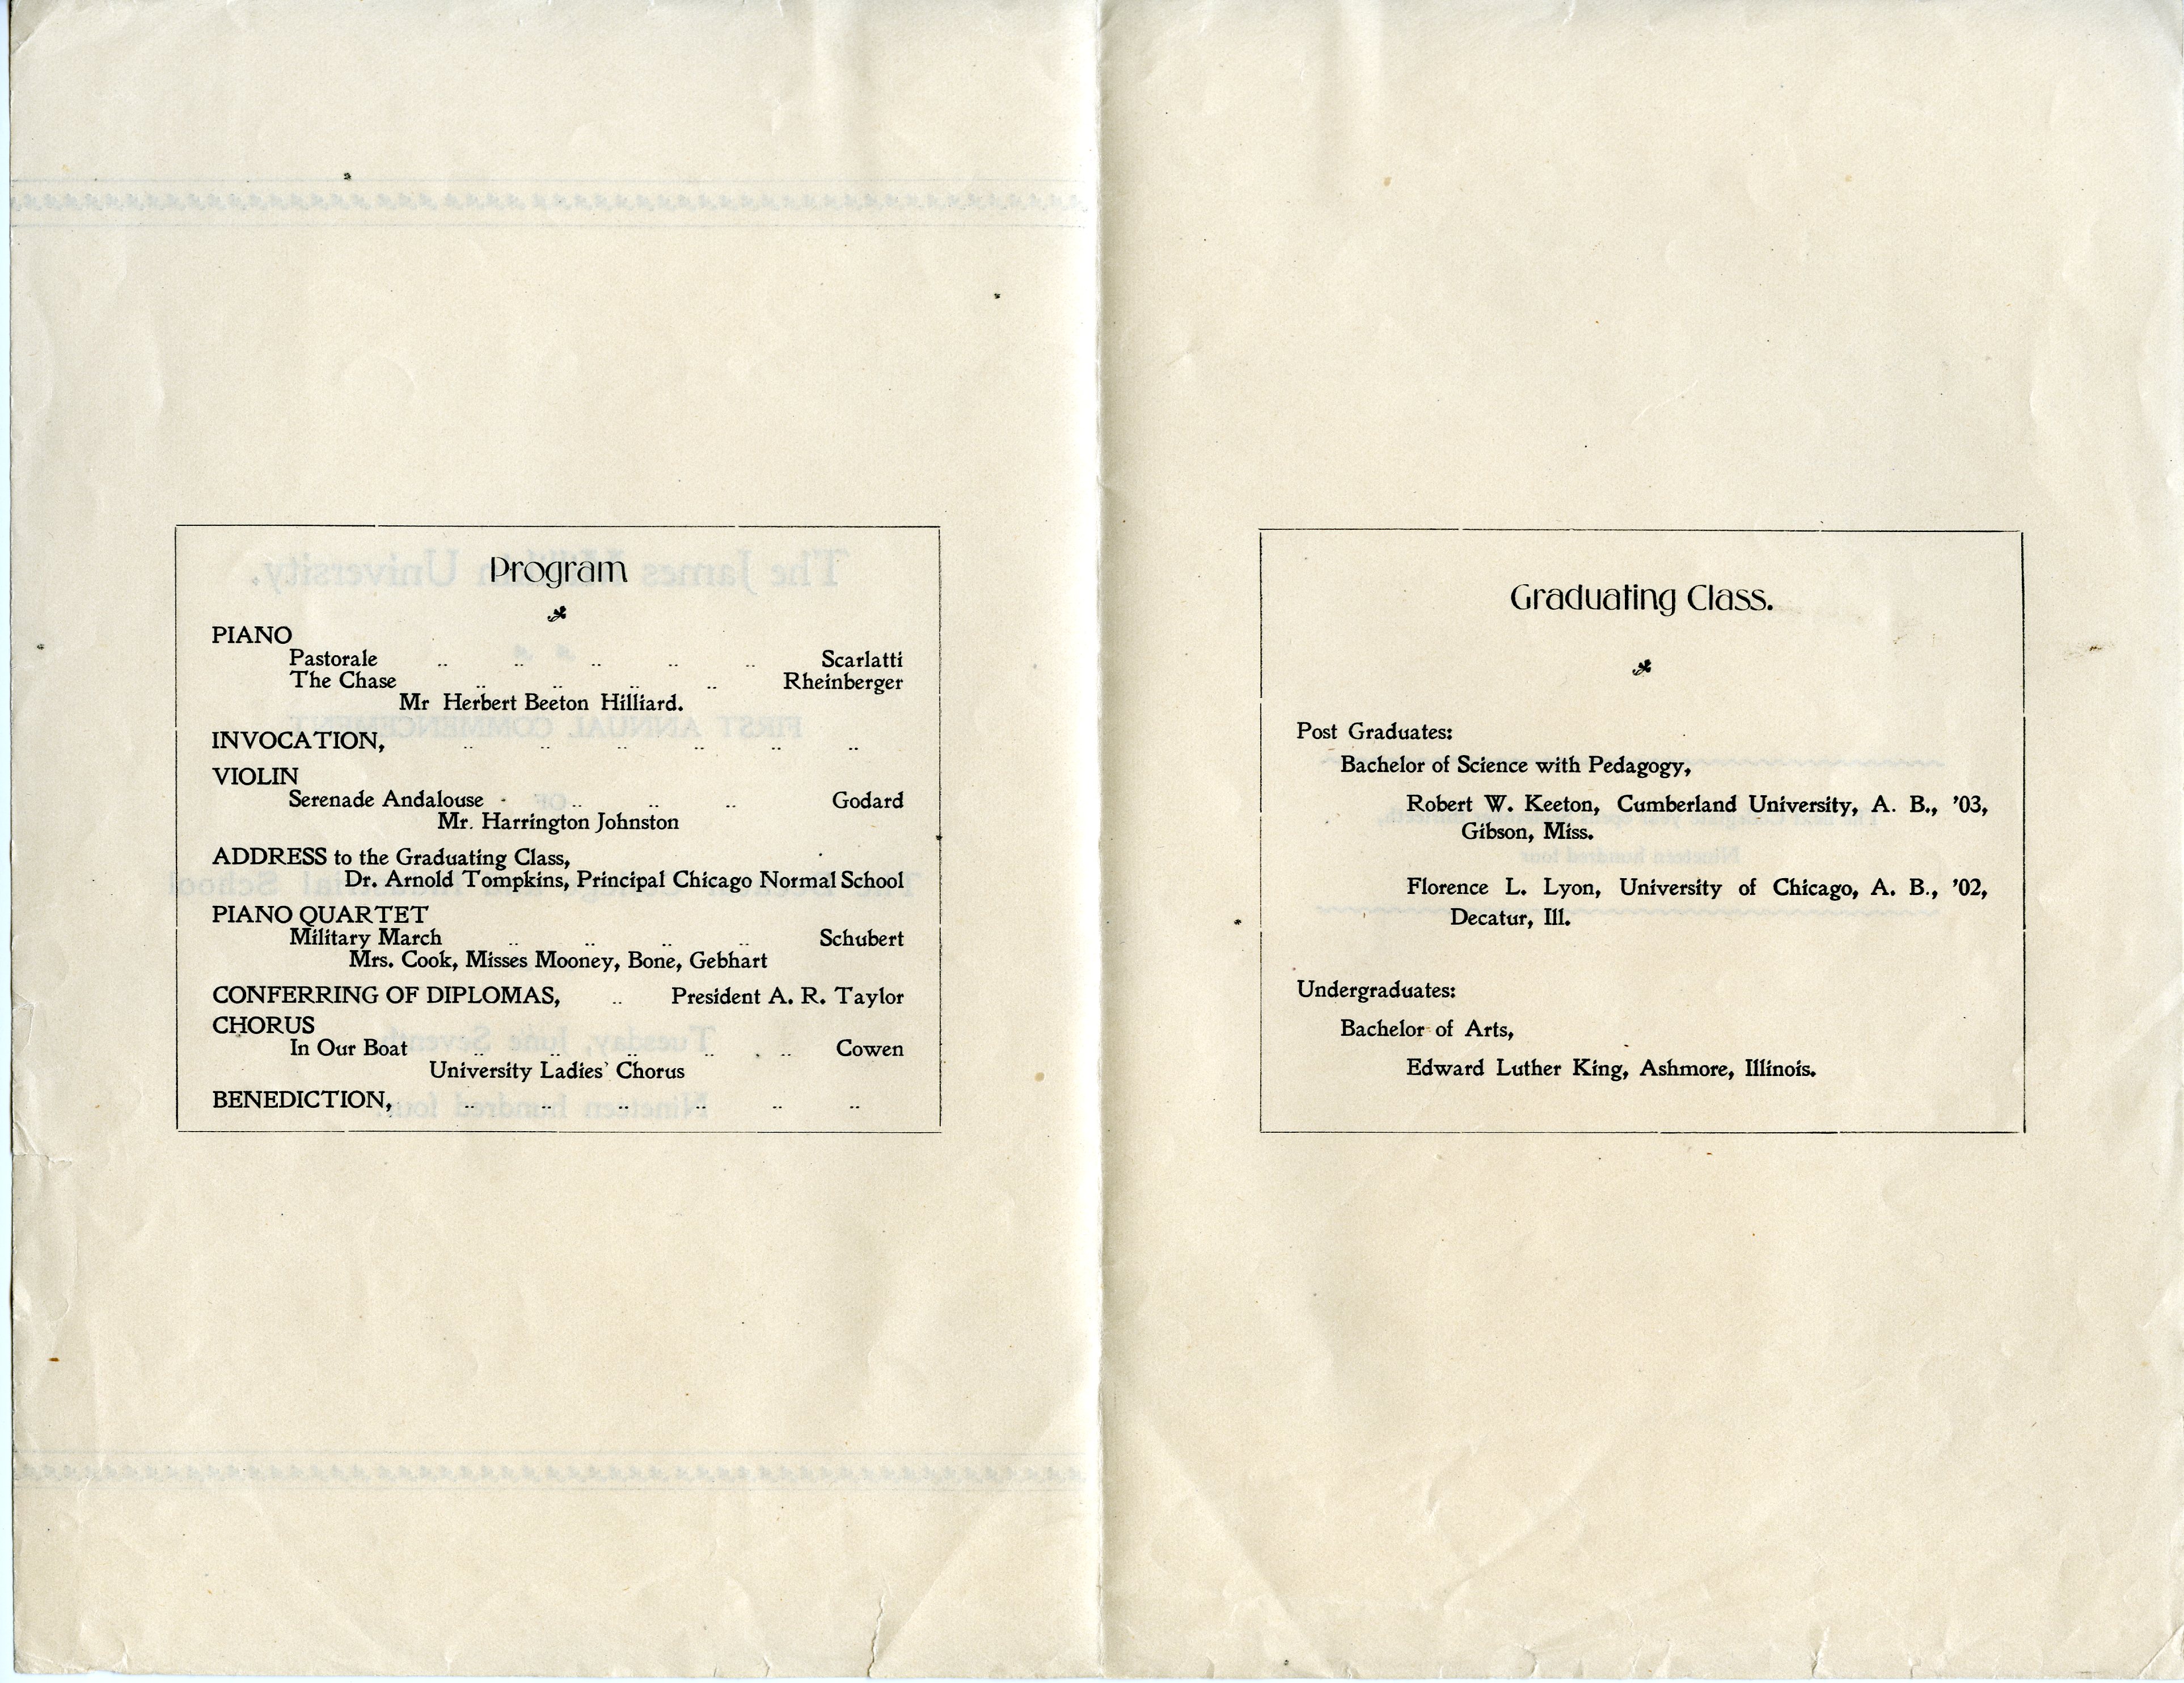 1904 Commencement program, pages 2-3